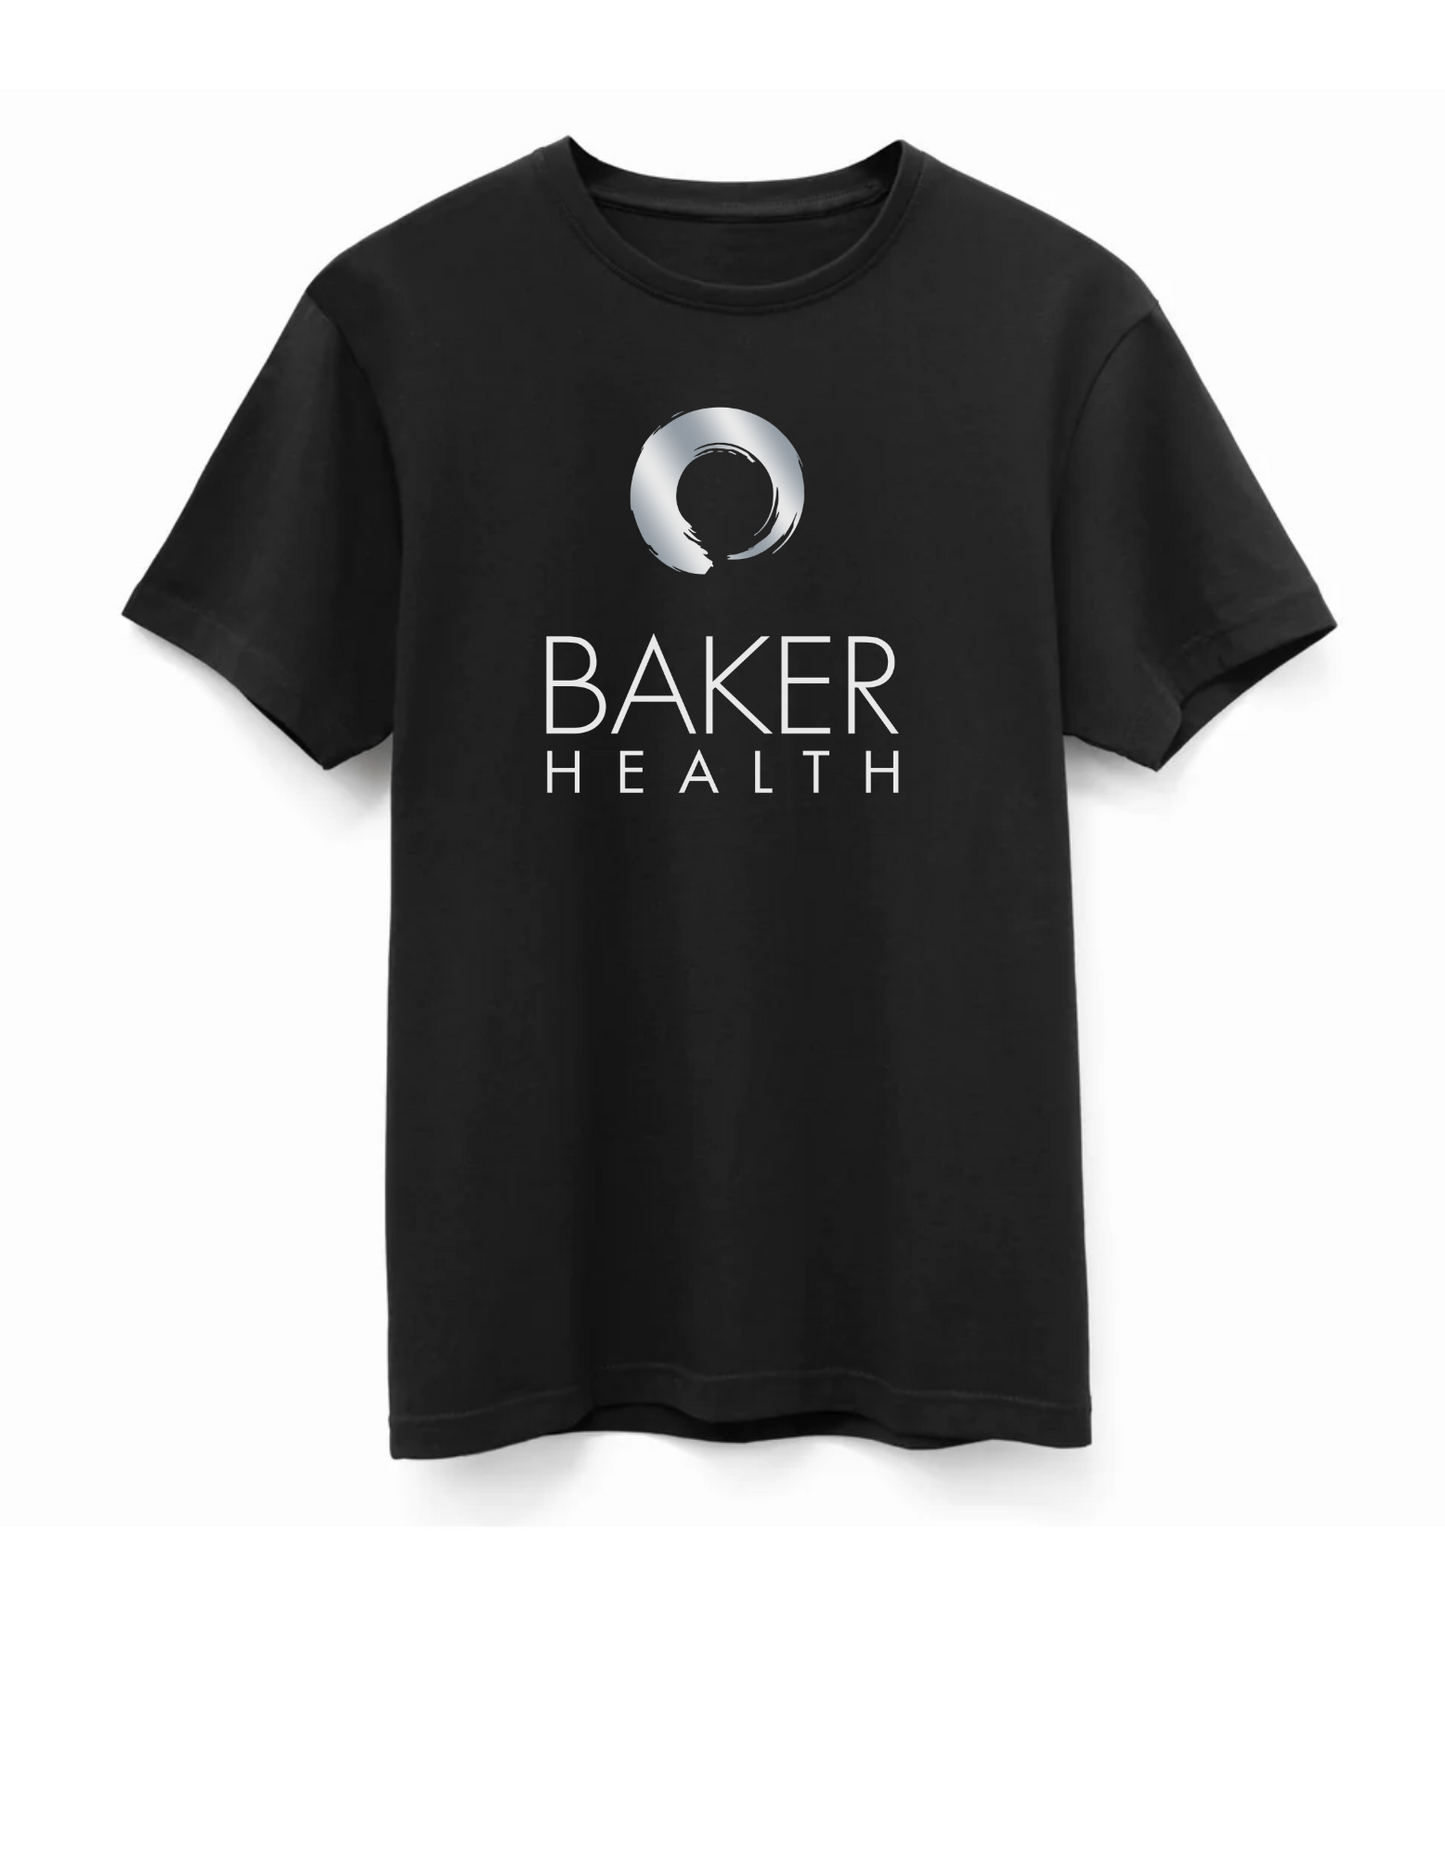 Baker Health - Unisex Short Sleeve T-Shirt